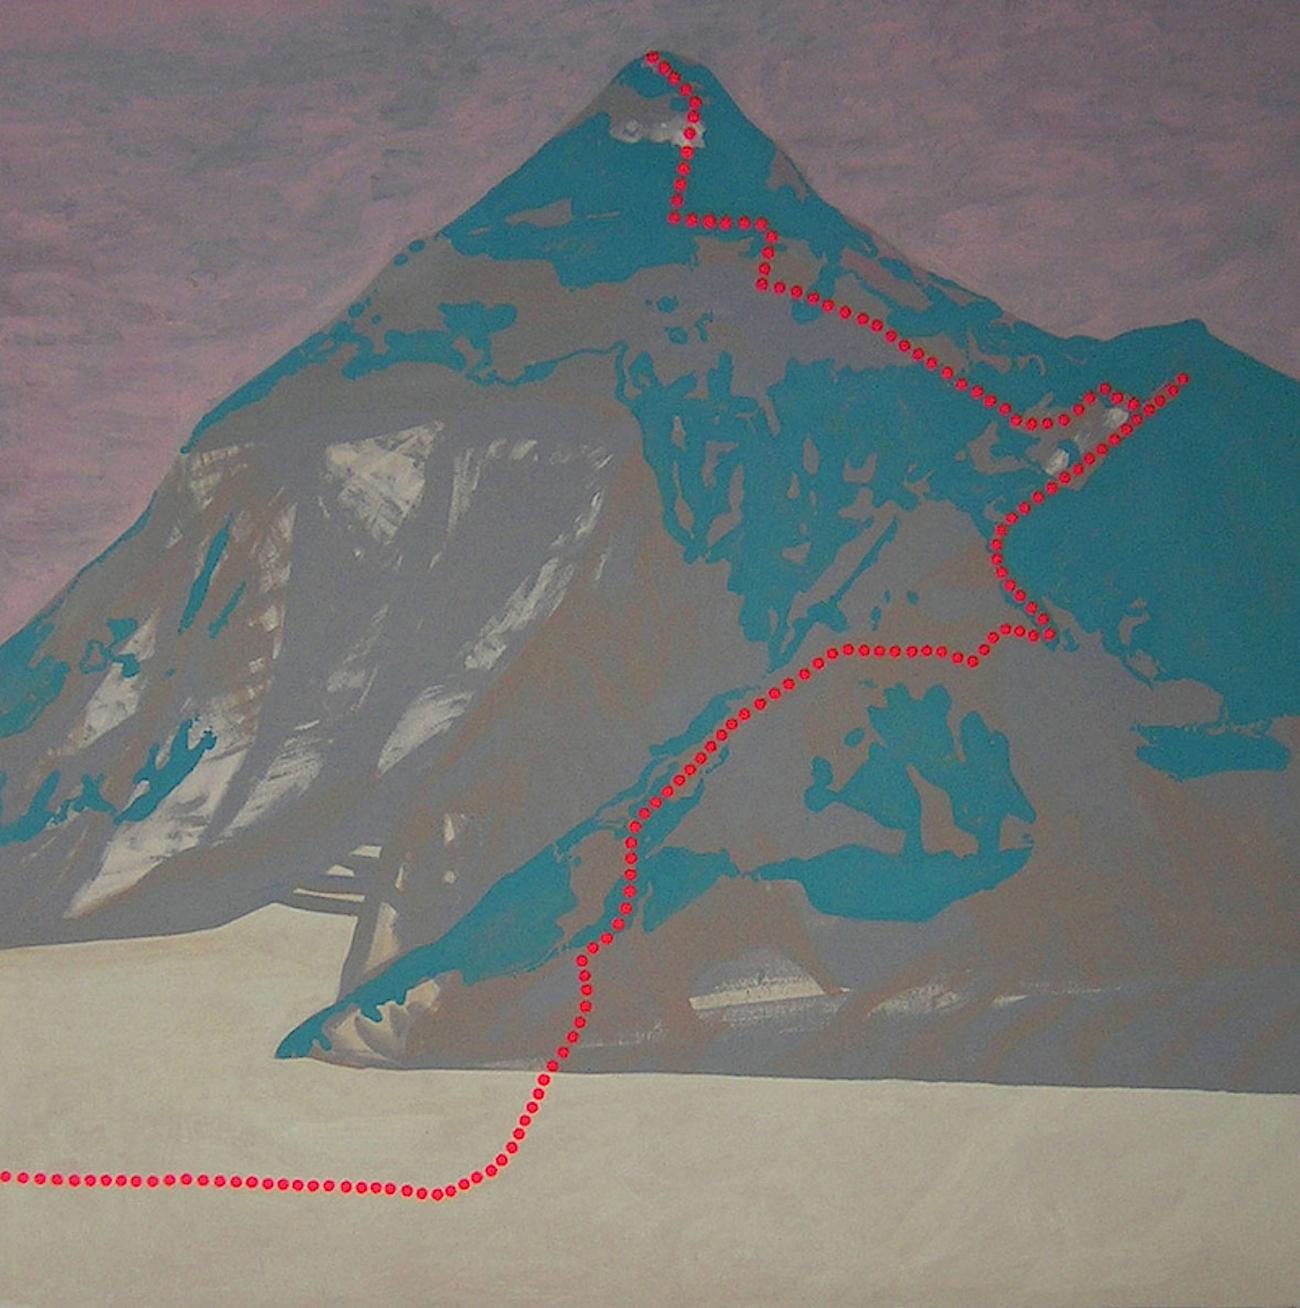 Anna Ładecka Landscape Painting – K2 - Berg Godwin-Austen, zeitgenössische Landschaft, moderne Bergmalerei